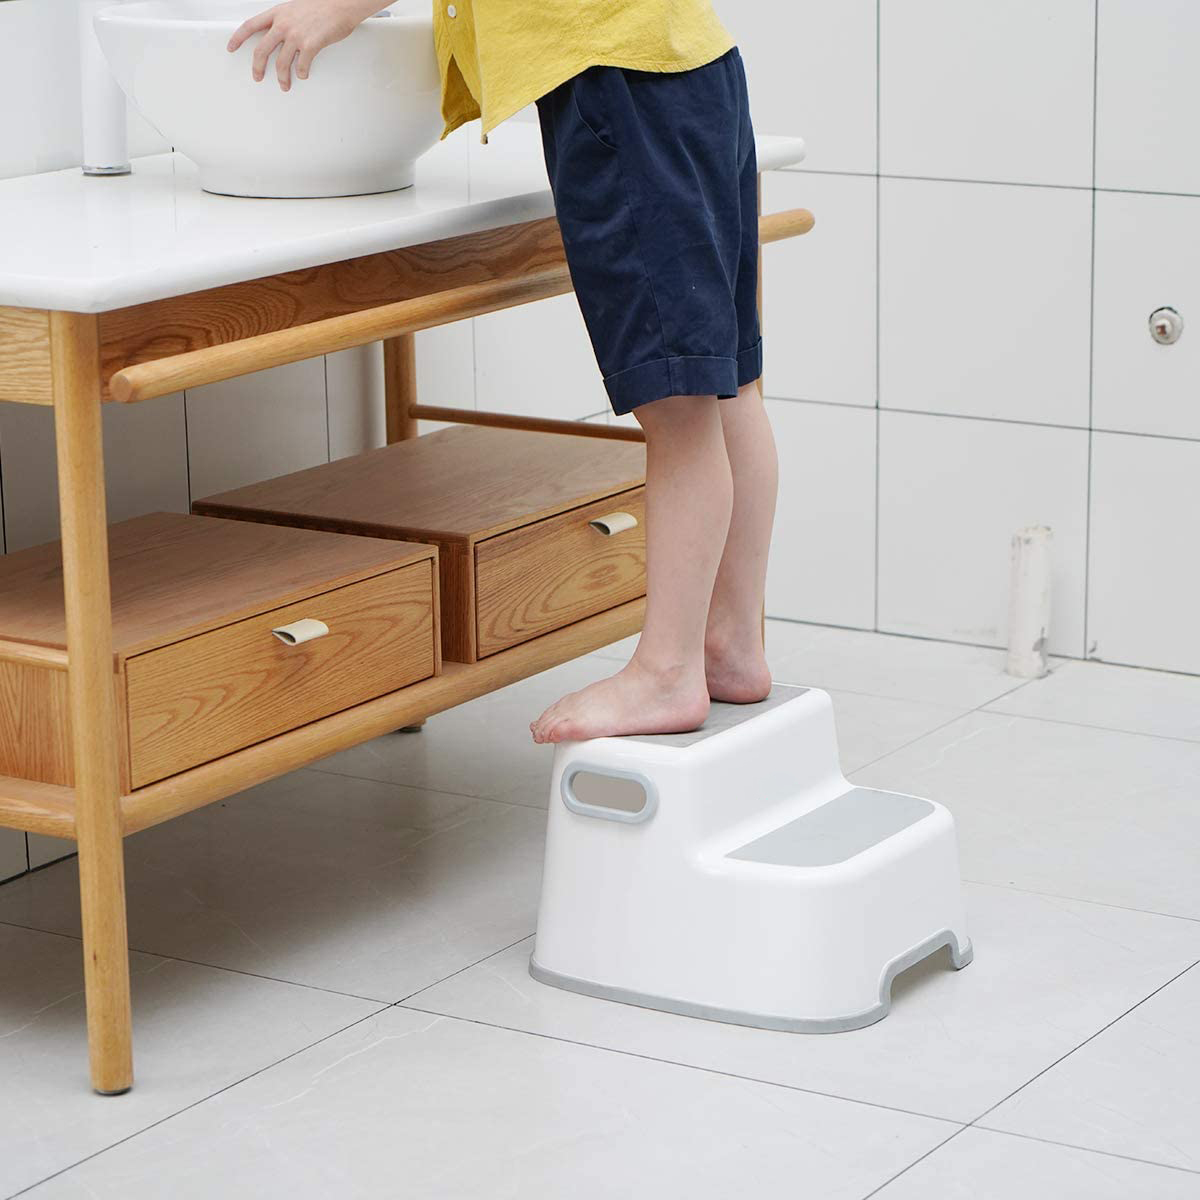 踏み台 子供 大人兼用 子ども 幼児 ステップ ２段 洗面所 手洗い お風呂 トイレ台 滑り止め トイレトレーニング :step01:ヘルツ - 通販  - Yahoo!ショッピング